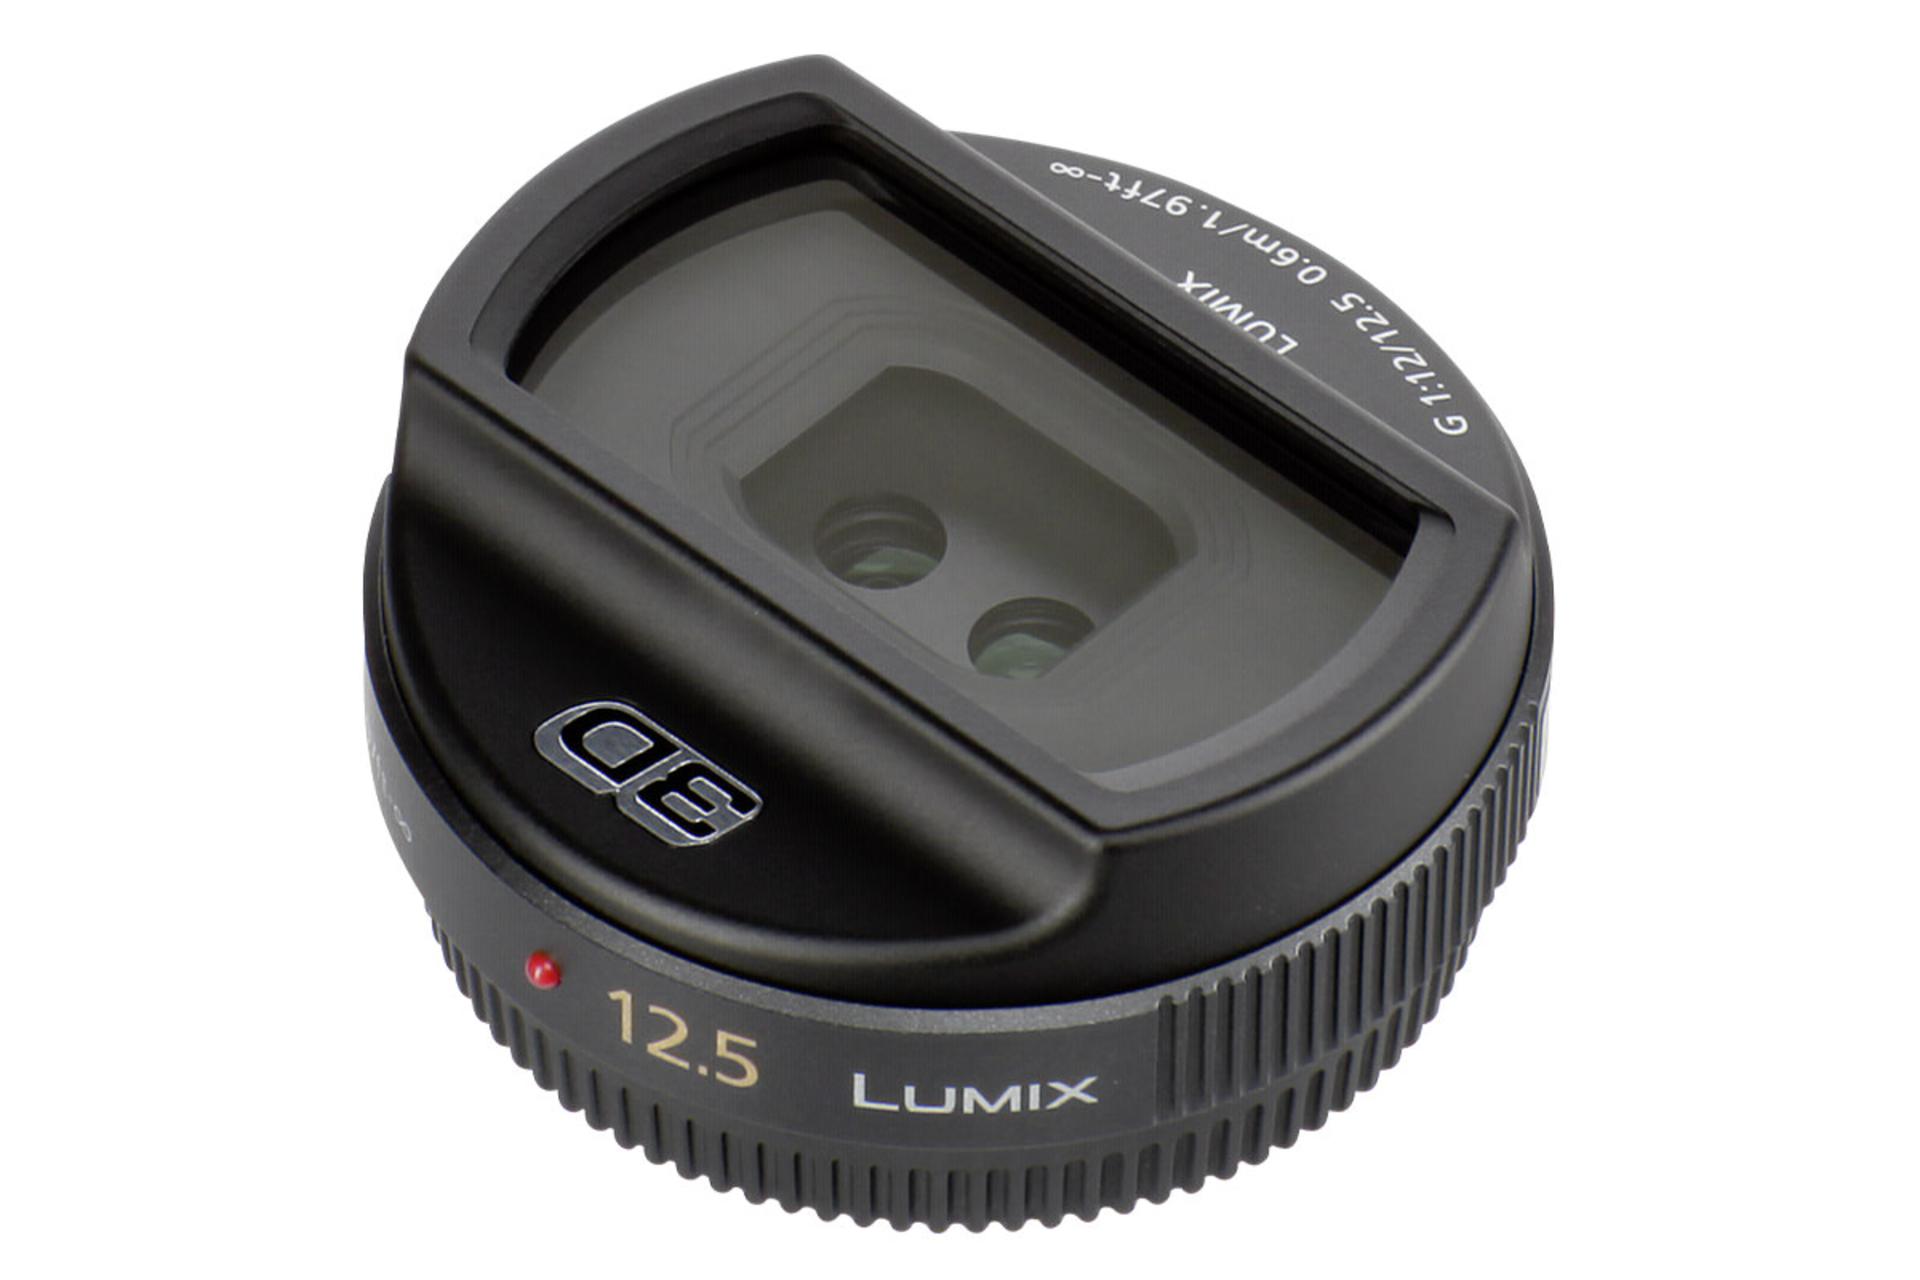  لنز پاناسونیک Lumix G 12.5mm / F12 نمای جانبی از بالا